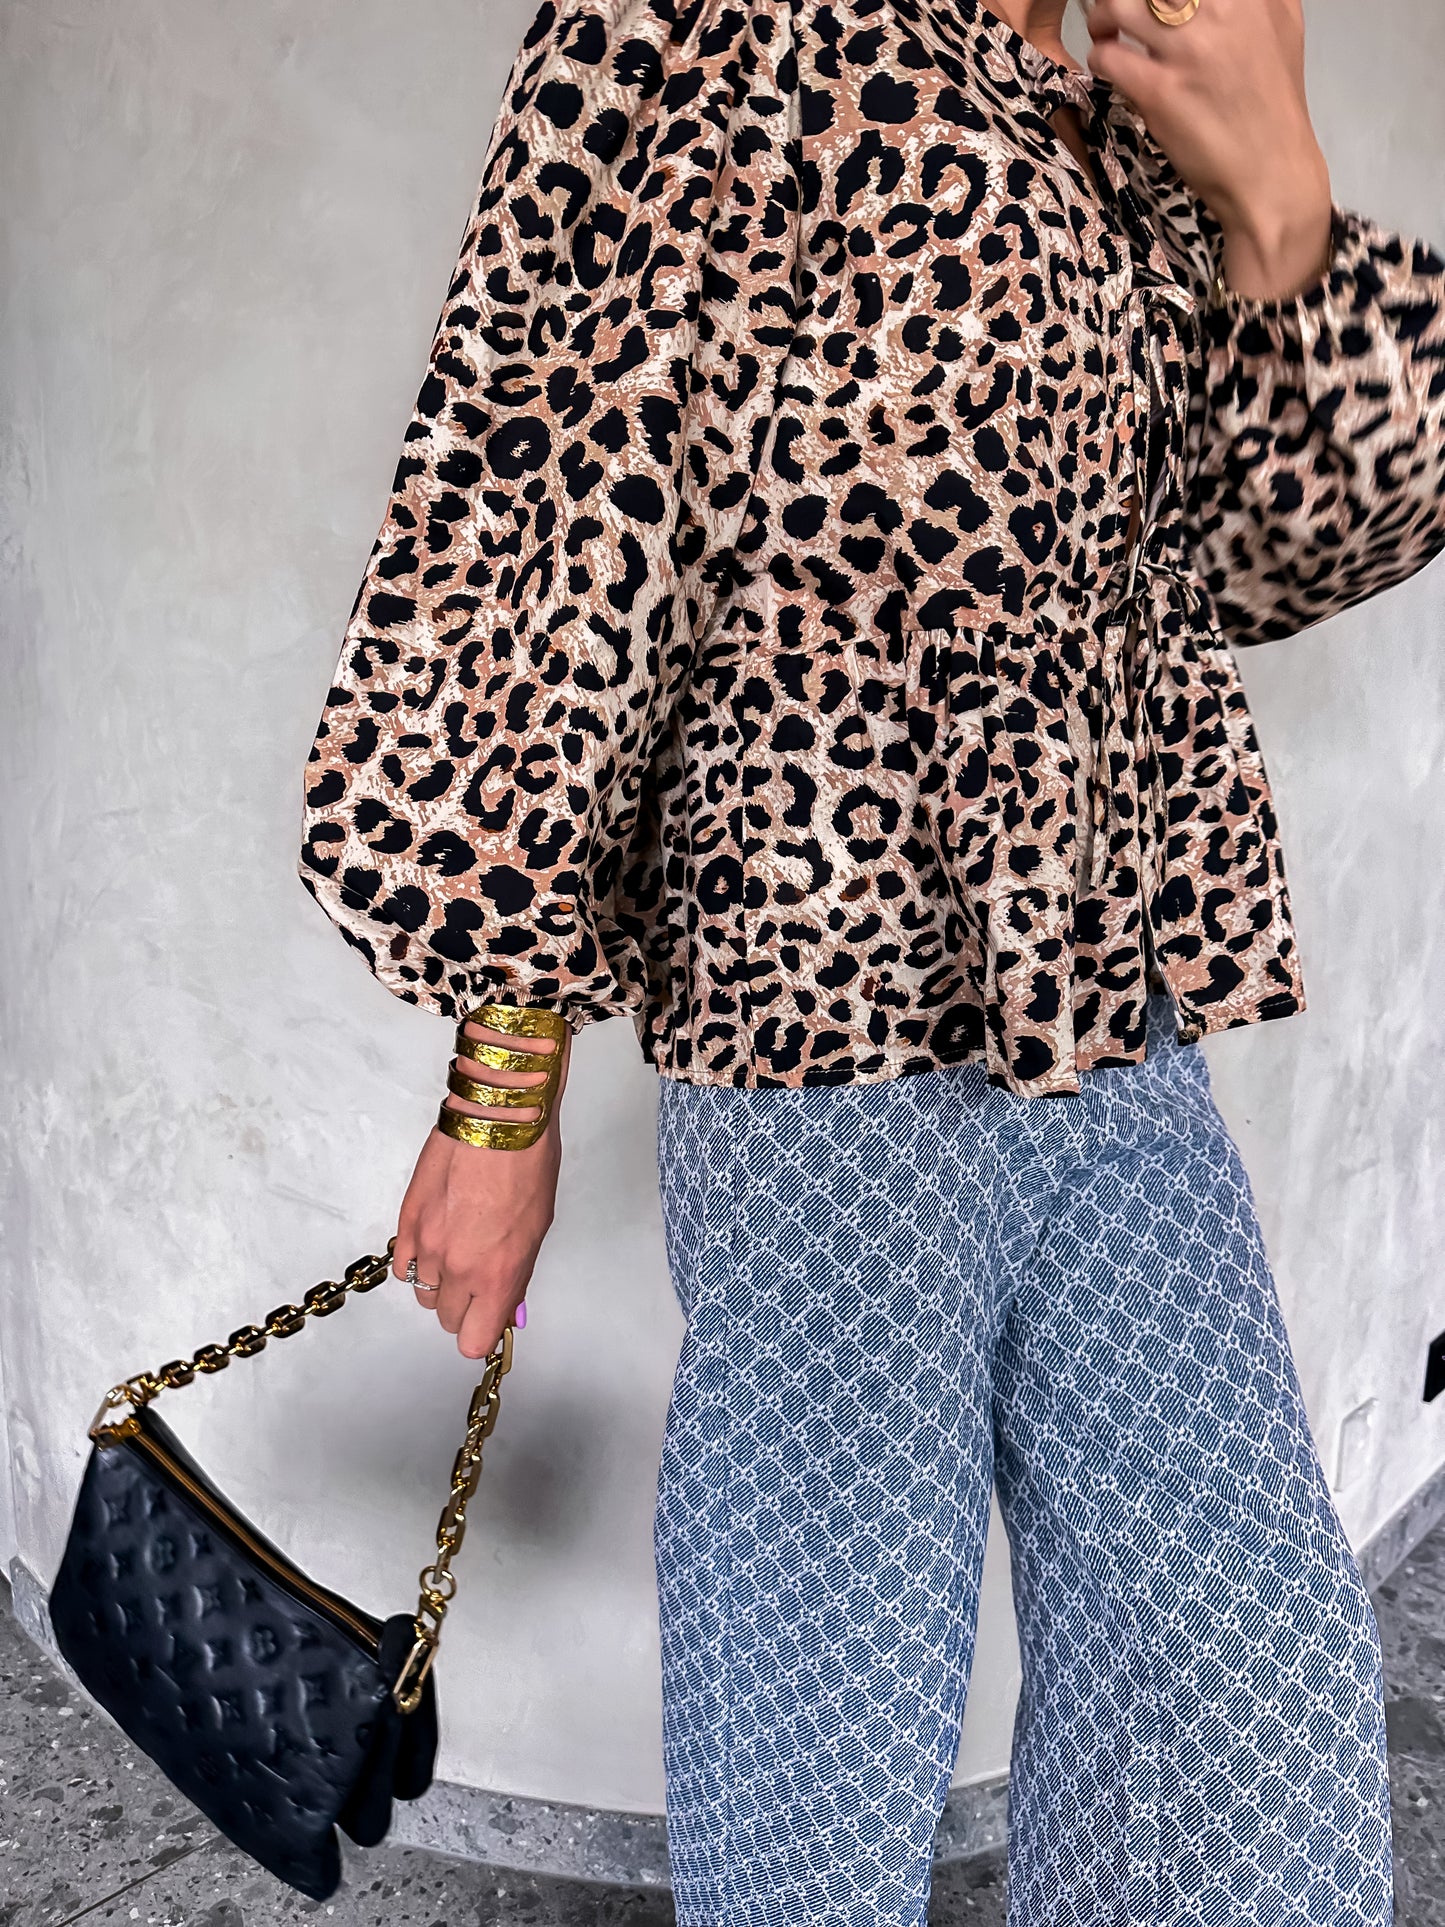 Lauren blouse Leopard